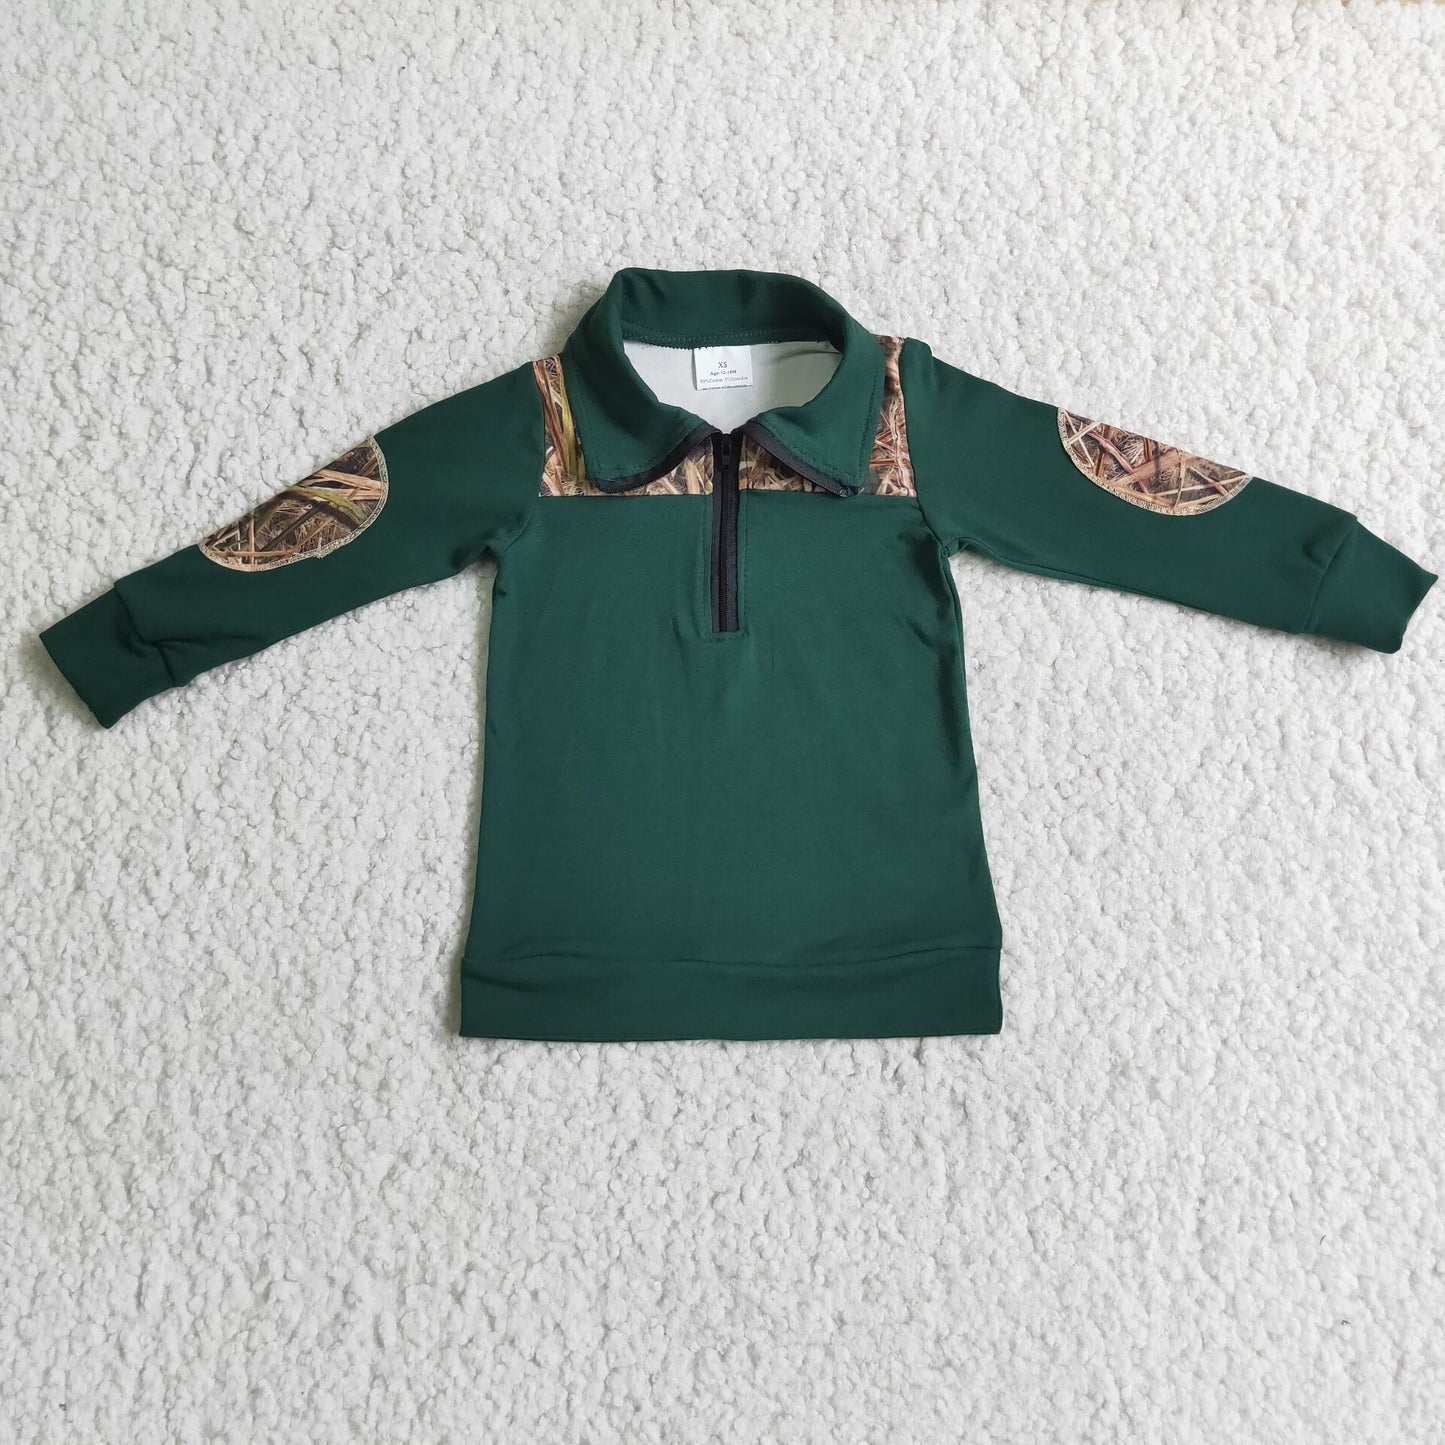 Baby Boy Green Long Sleeve Zipper Shirt